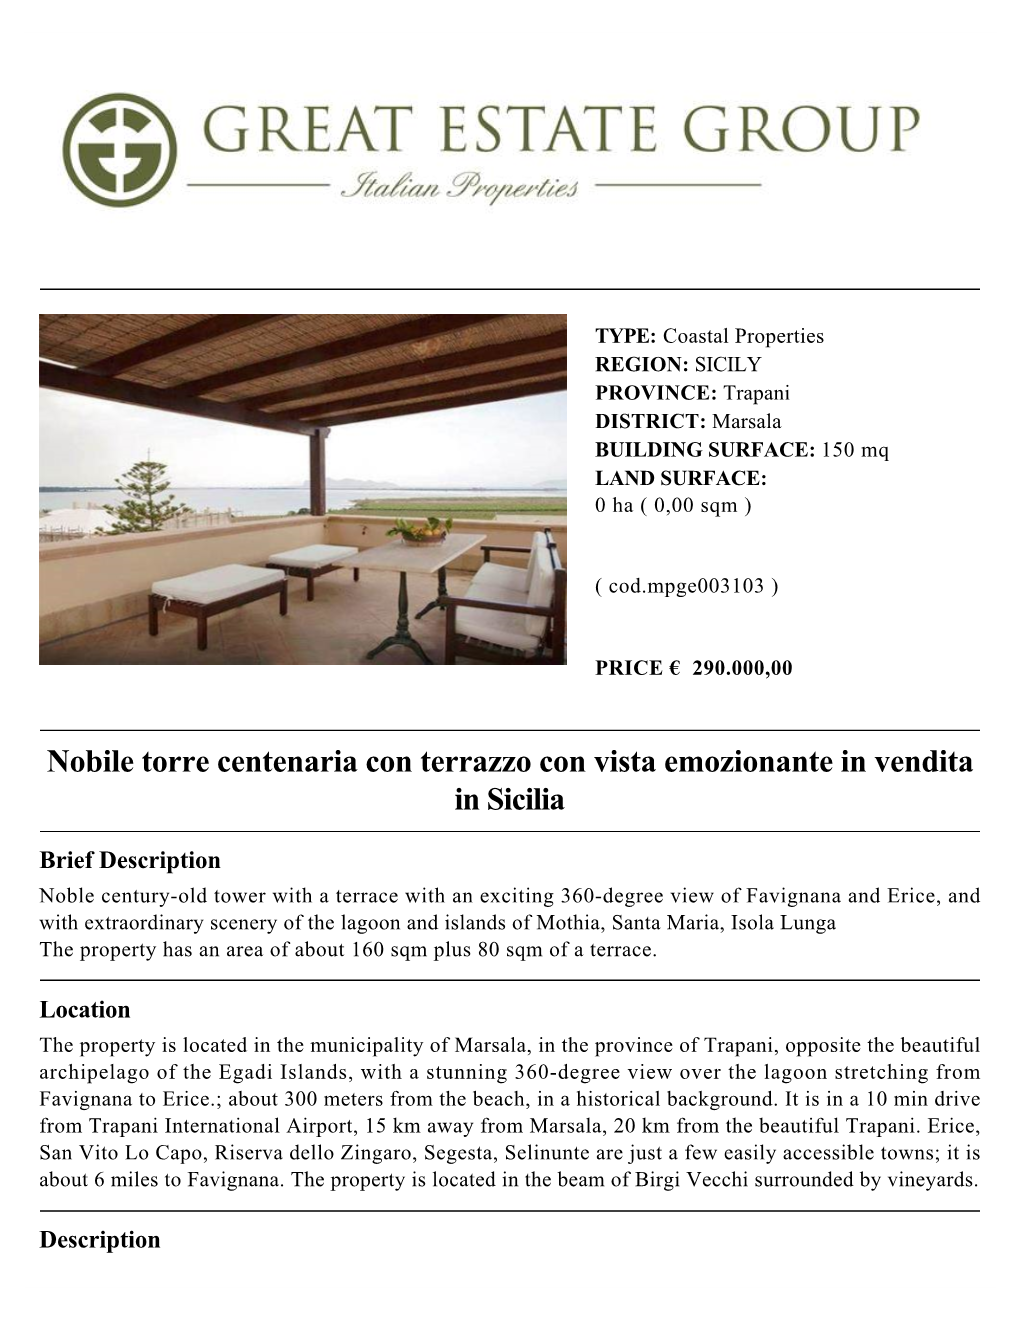 Nobile Torre Centenaria Con Terrazzo Con Vista Emozionante in Vendita in Sicilia